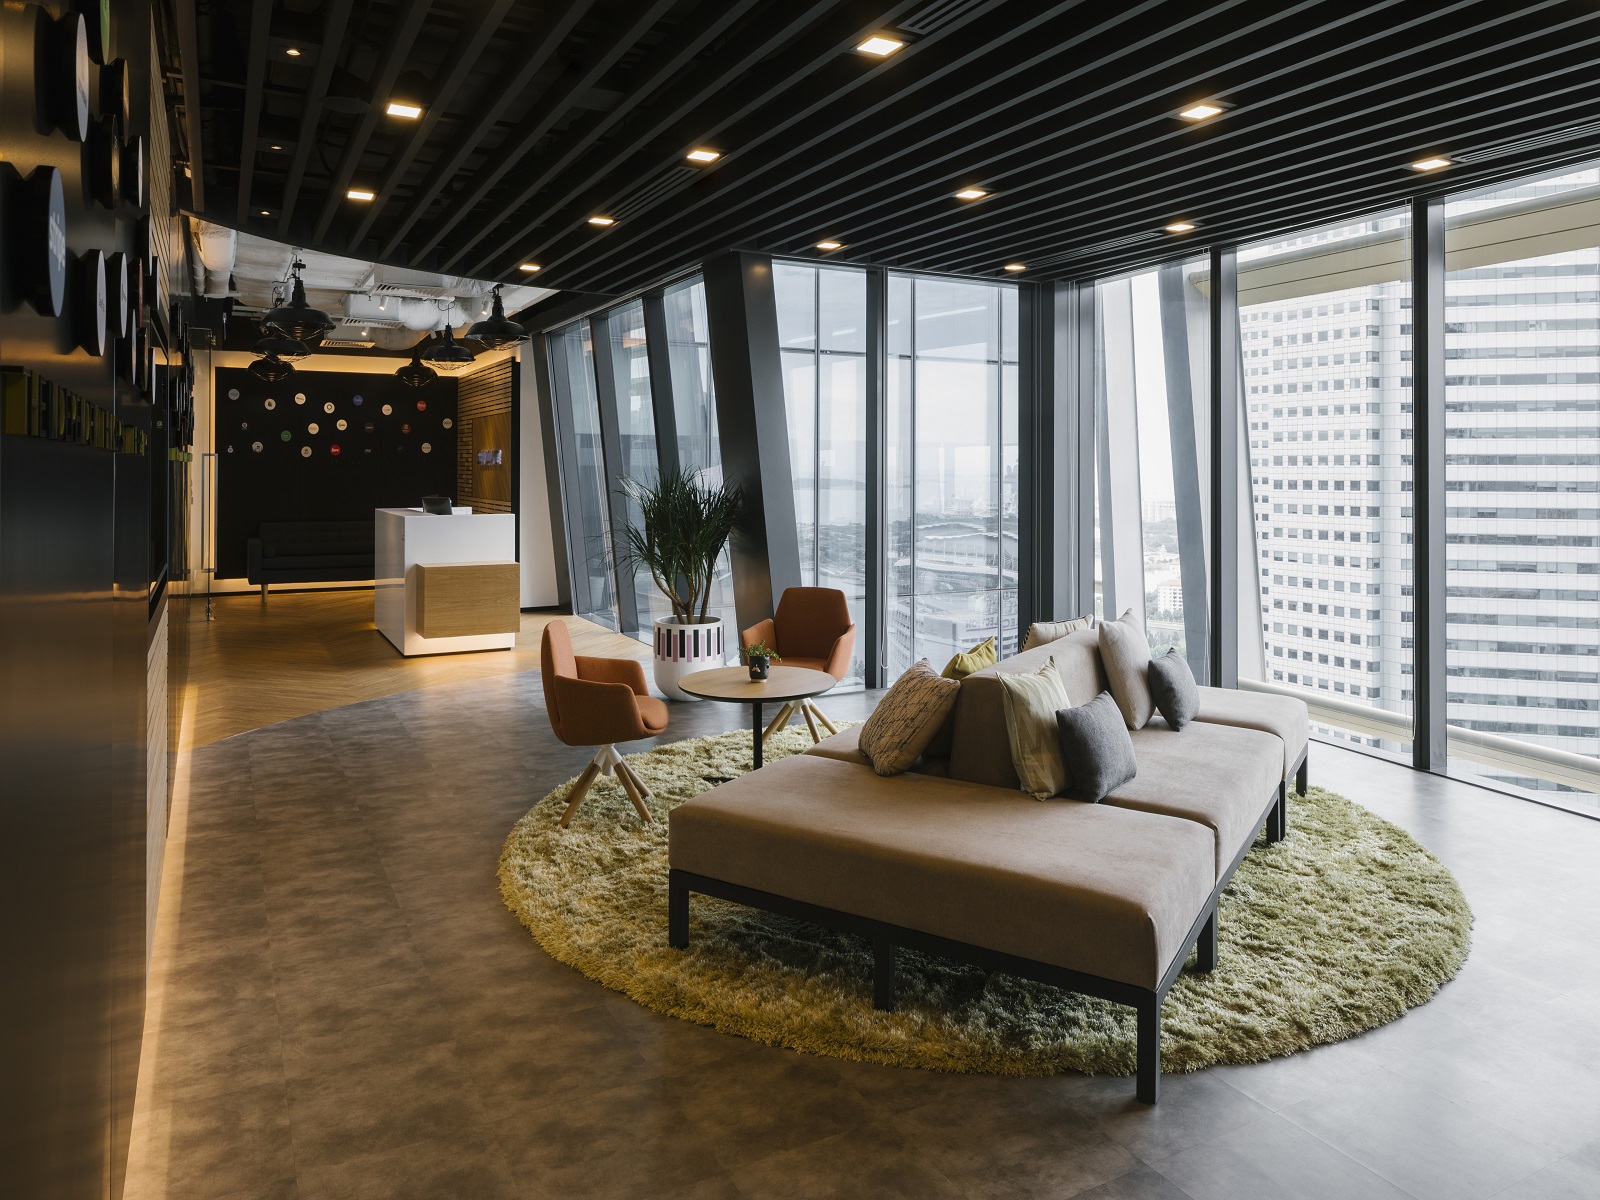 图片[2]|保密投资公司办公室——新加坡|ART-Arrakis | 建筑室内设计的创新与灵感